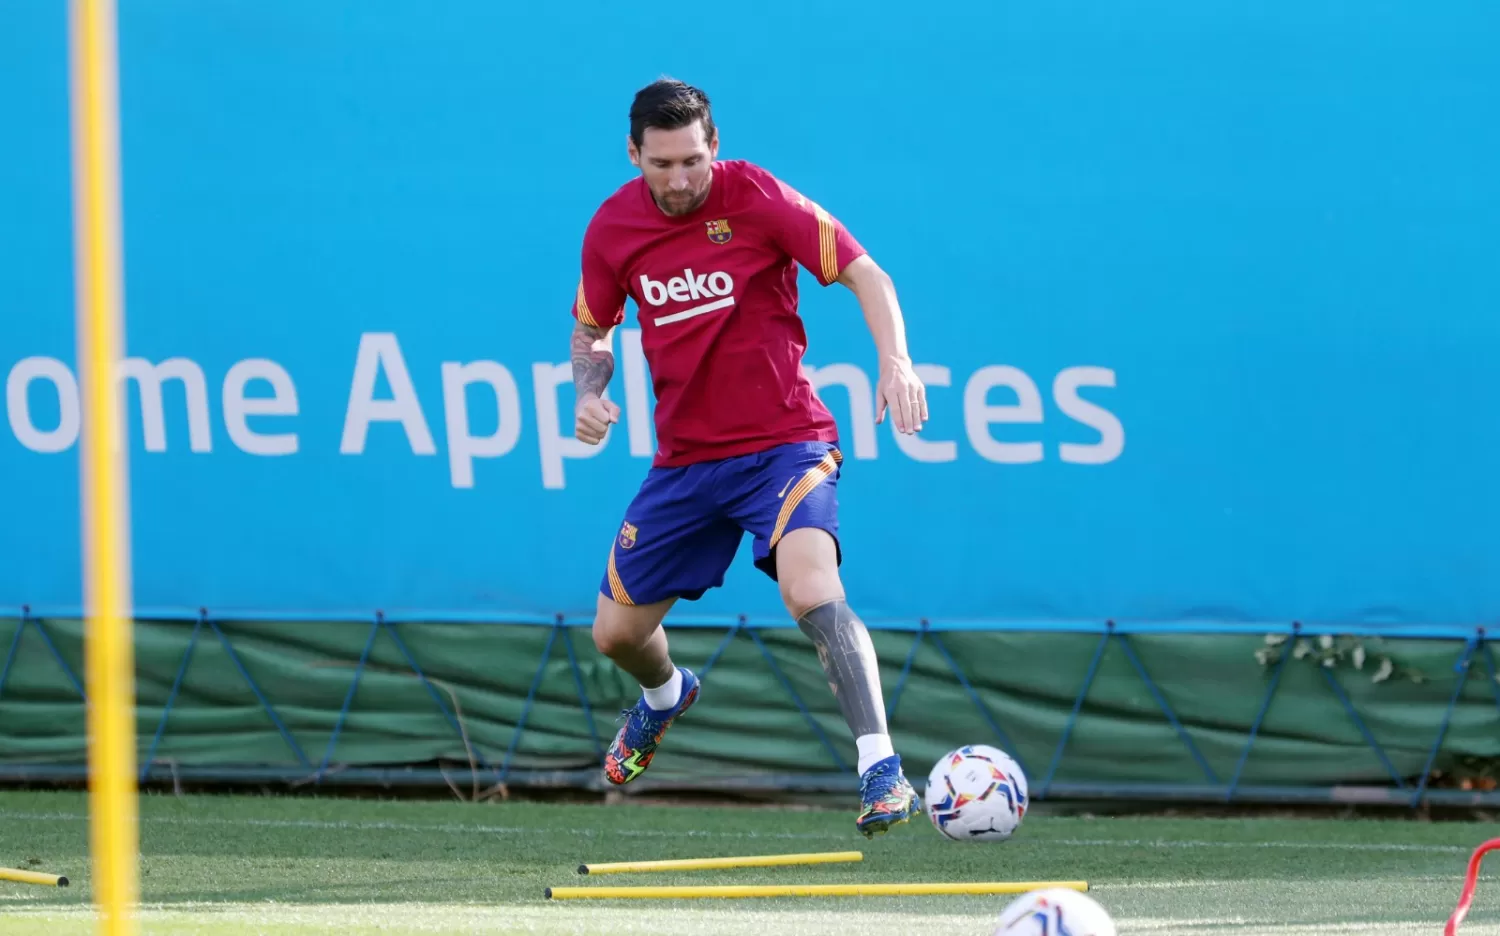 DE NUEVO CON EL EQUIPO. Messi se reintegró al plantel. Foto: Twitter @FCBarcelona_es